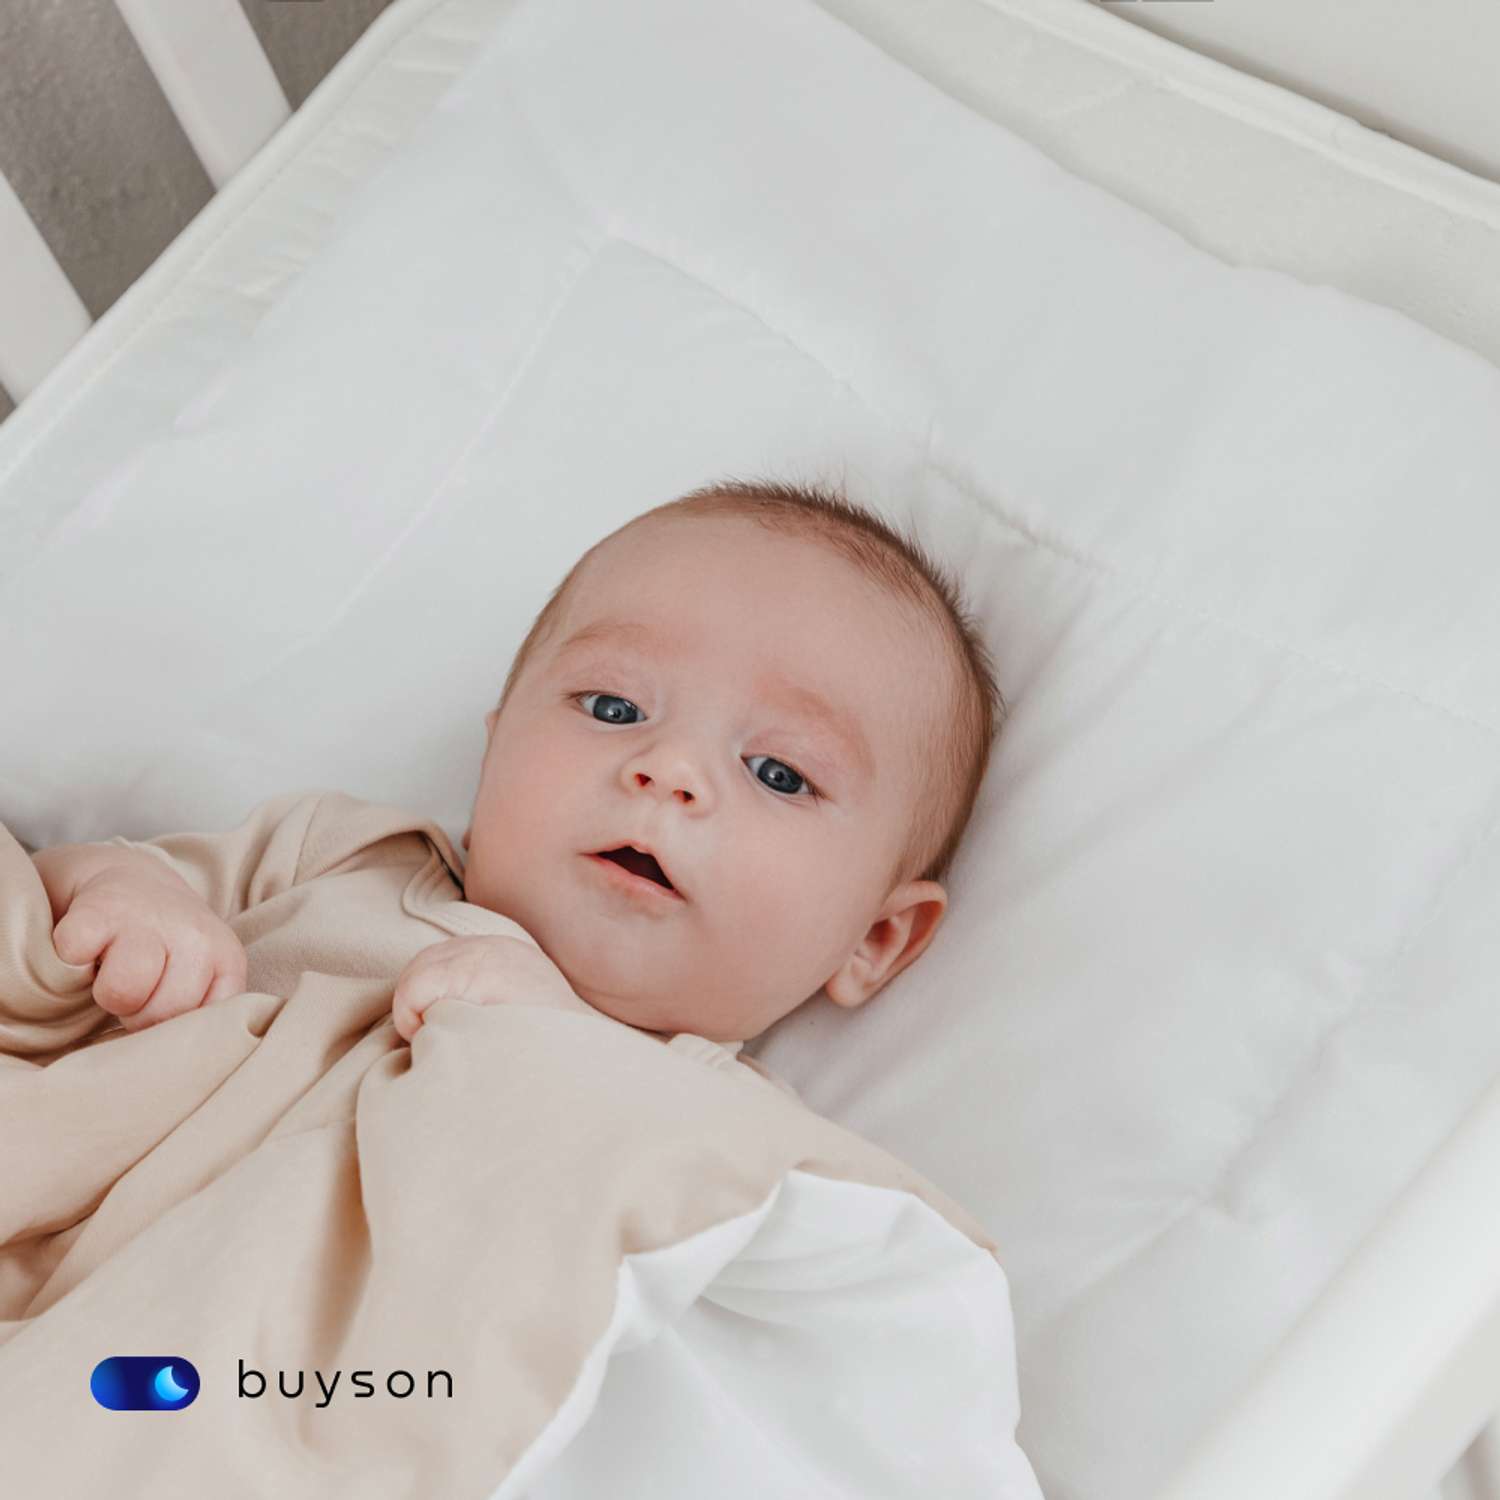 Анатомическая подушка buyson BuyMini для новорожденных от 0 до 3 лет 35х55 см высота 3 см - фото 9